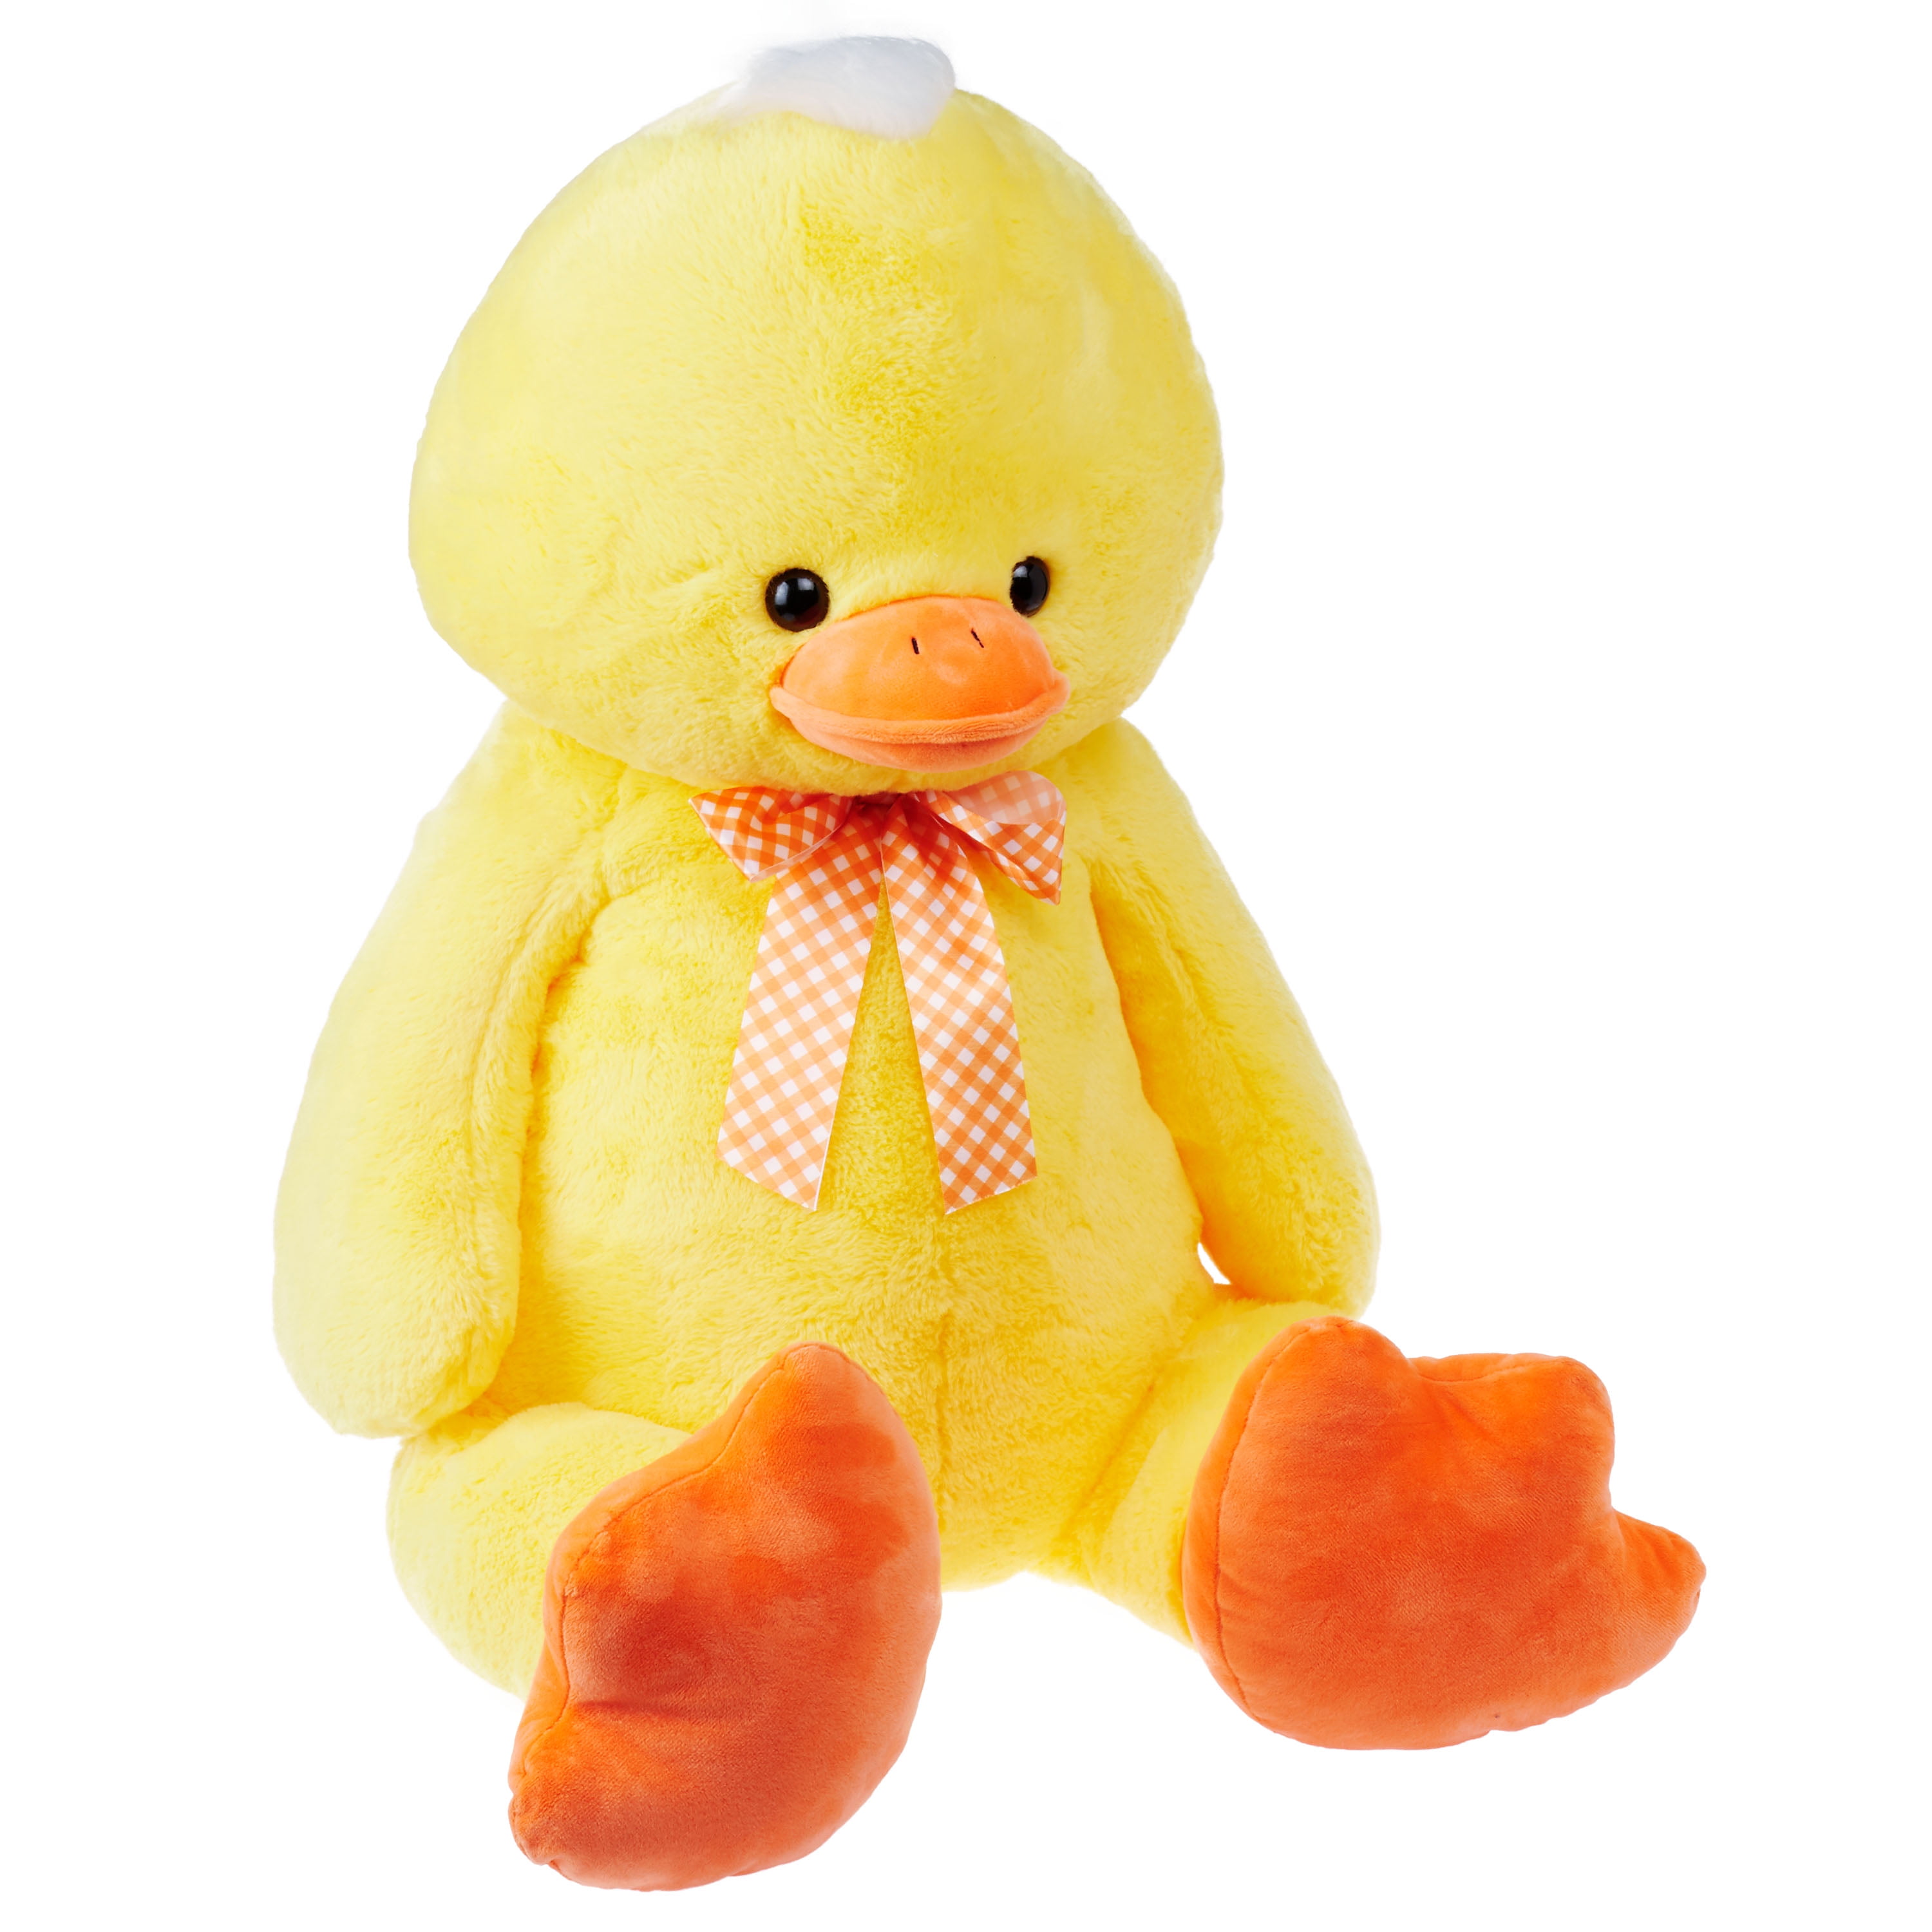 duck stuffed animal walmart